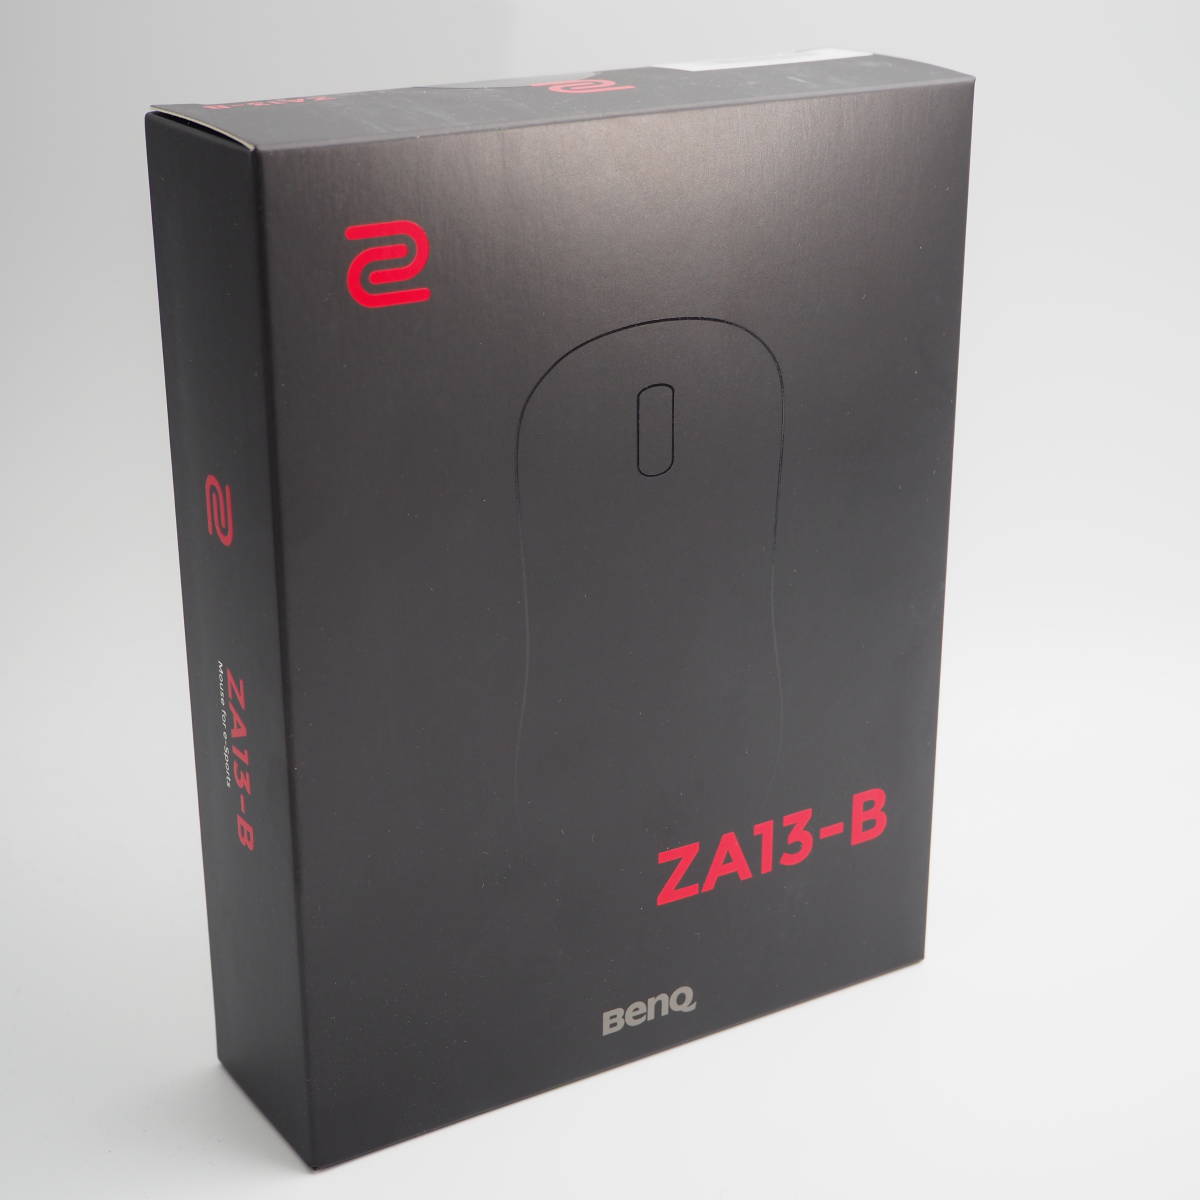 即納対応 【新品未開封】超人気 BenQ ゲーミングマウス ZA13-B Zowie PC周辺機器